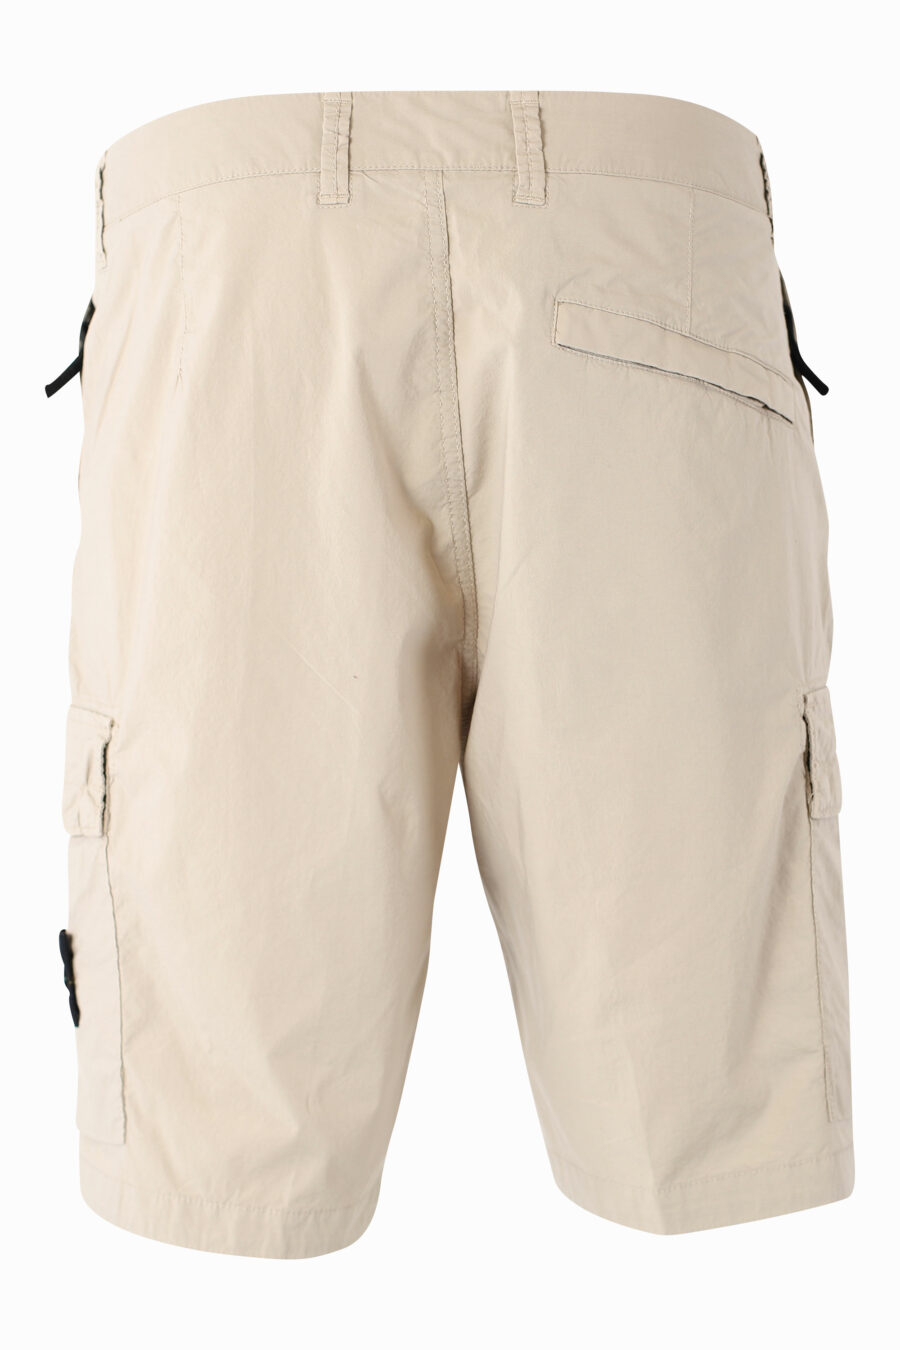 Pantalón corto midi beige estilo cargo - IMG 1019